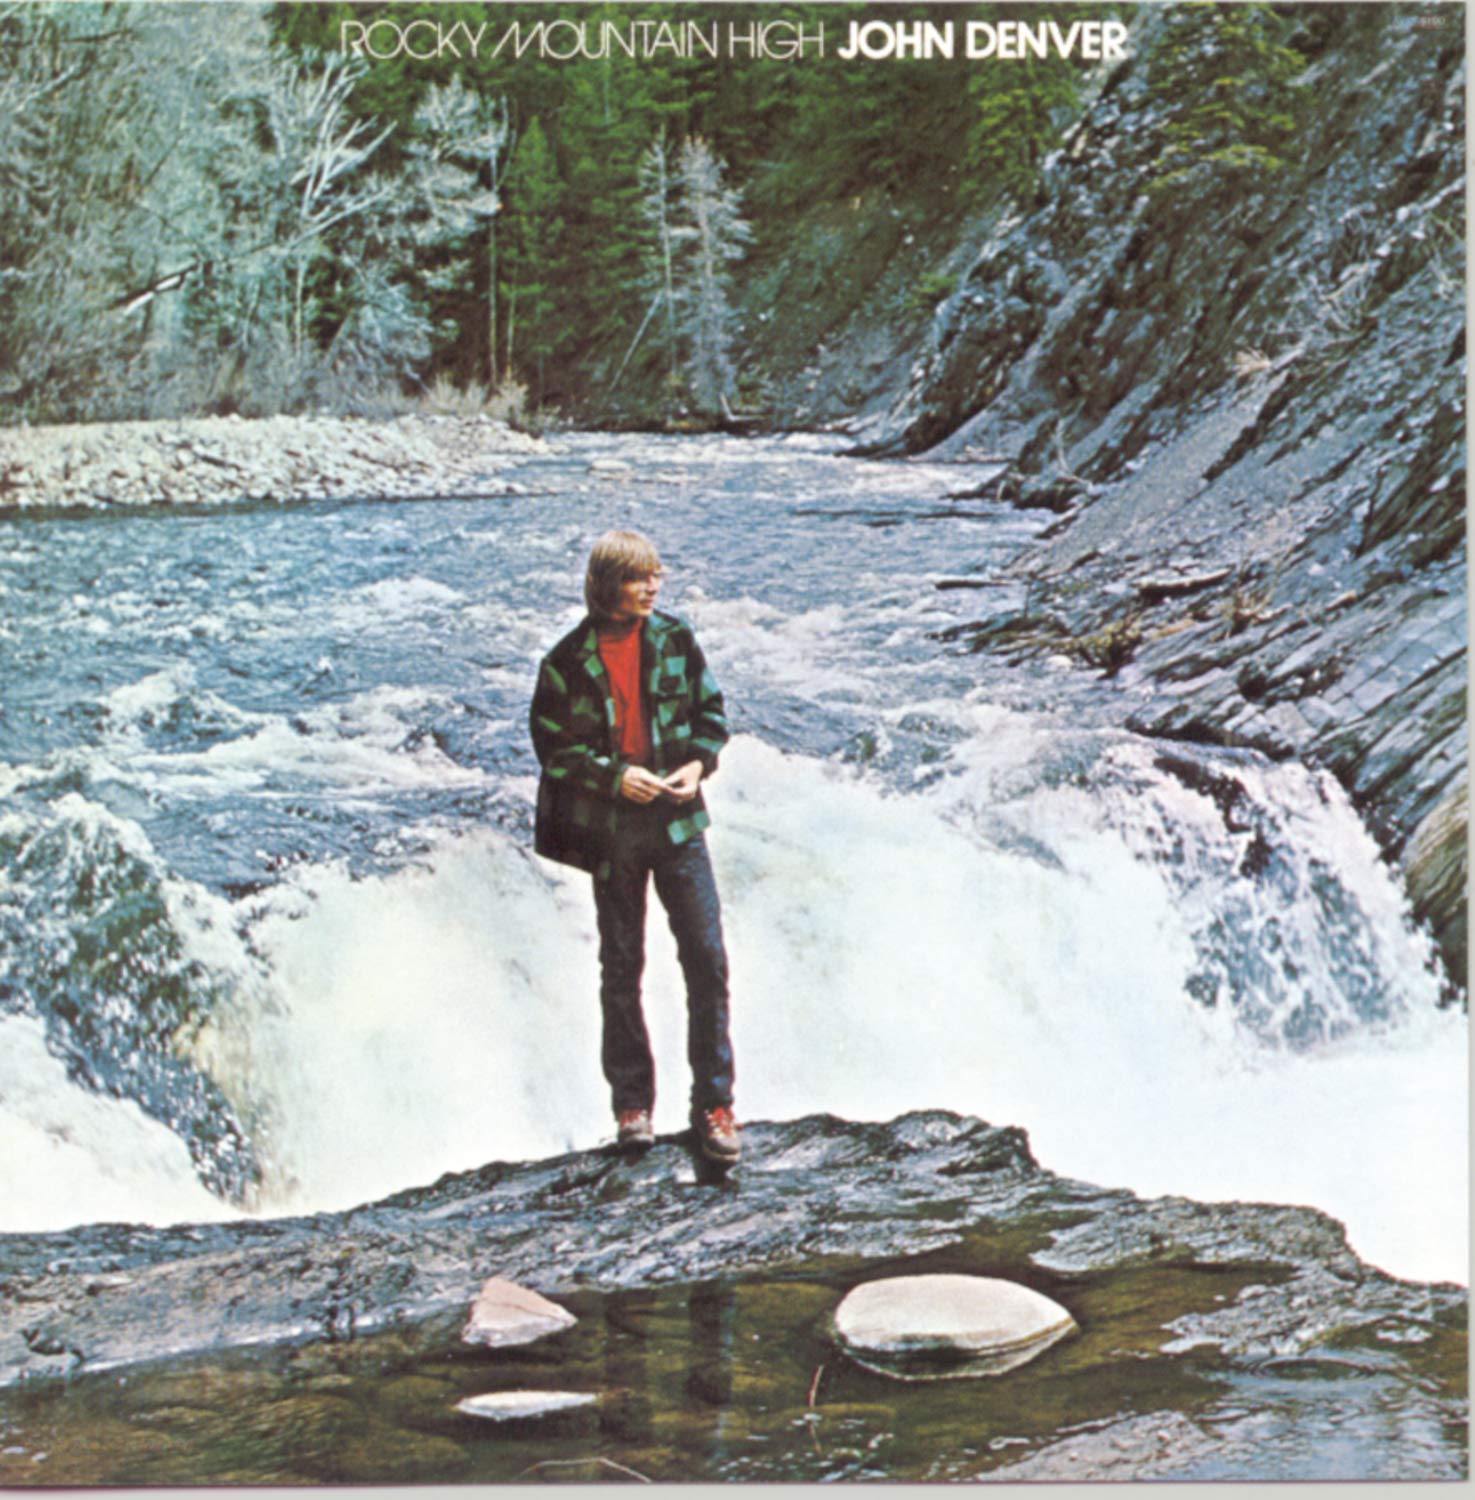 John Denver - Rocky Mountain High Album Cover